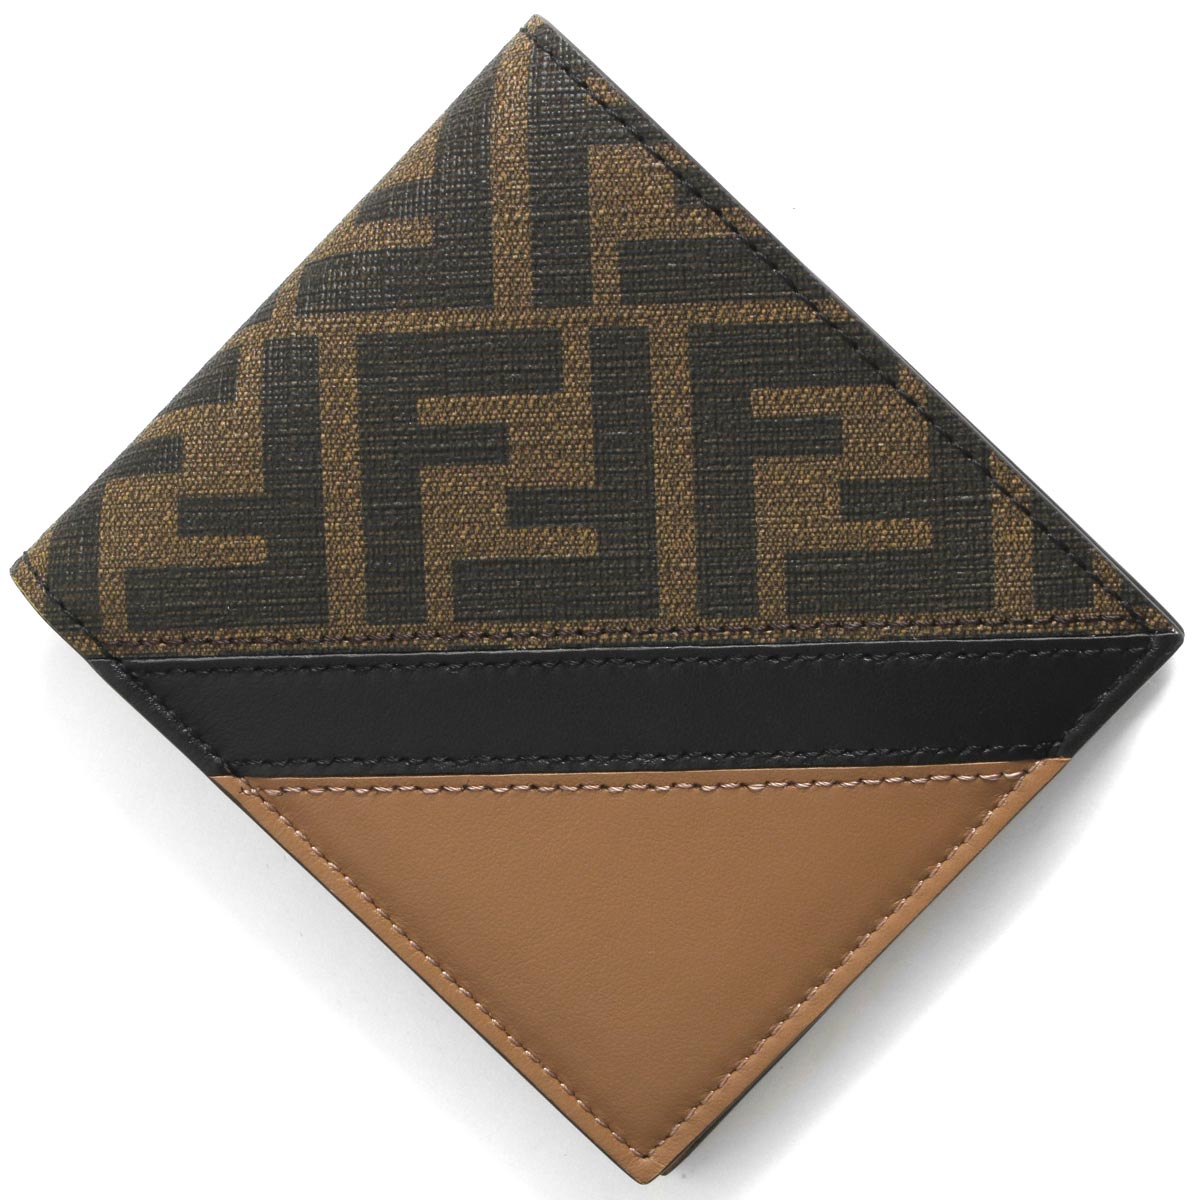 フェンディ フェンディ 二つ折り財布（札入れ） 財布 メンズ ダイアゴナル ズッカ FF タバコブラウン&サンドブラウンベージュ&ブラック 7M0169 AJF8 F1EGA FENDI